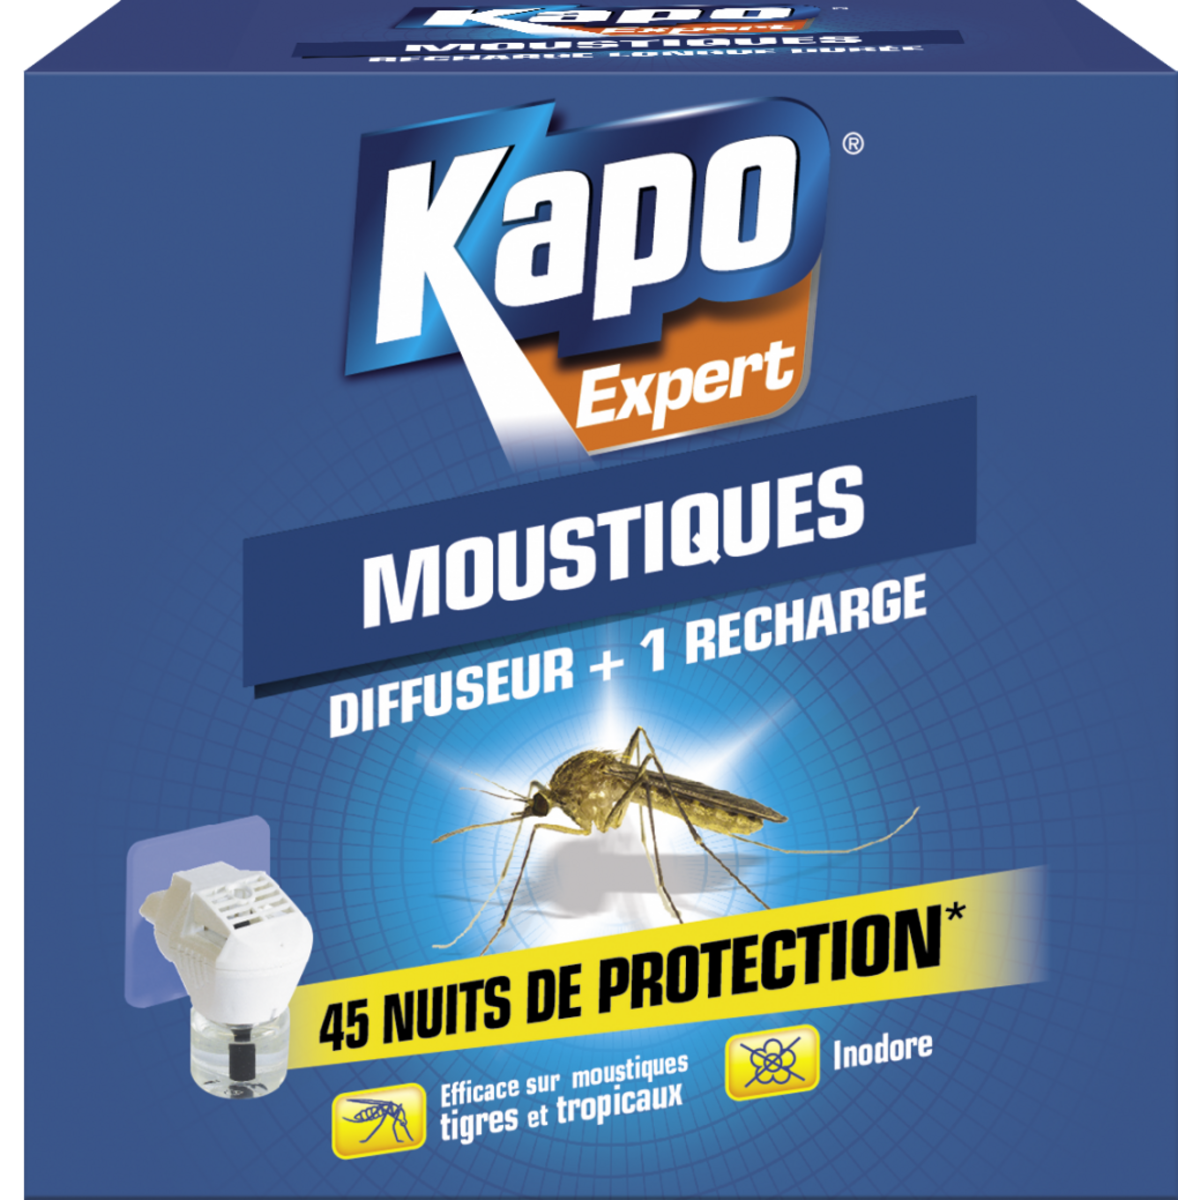 Kapo Insecticide diffuseur liquide et 1 recharge moustiques KAPO, 33 ml